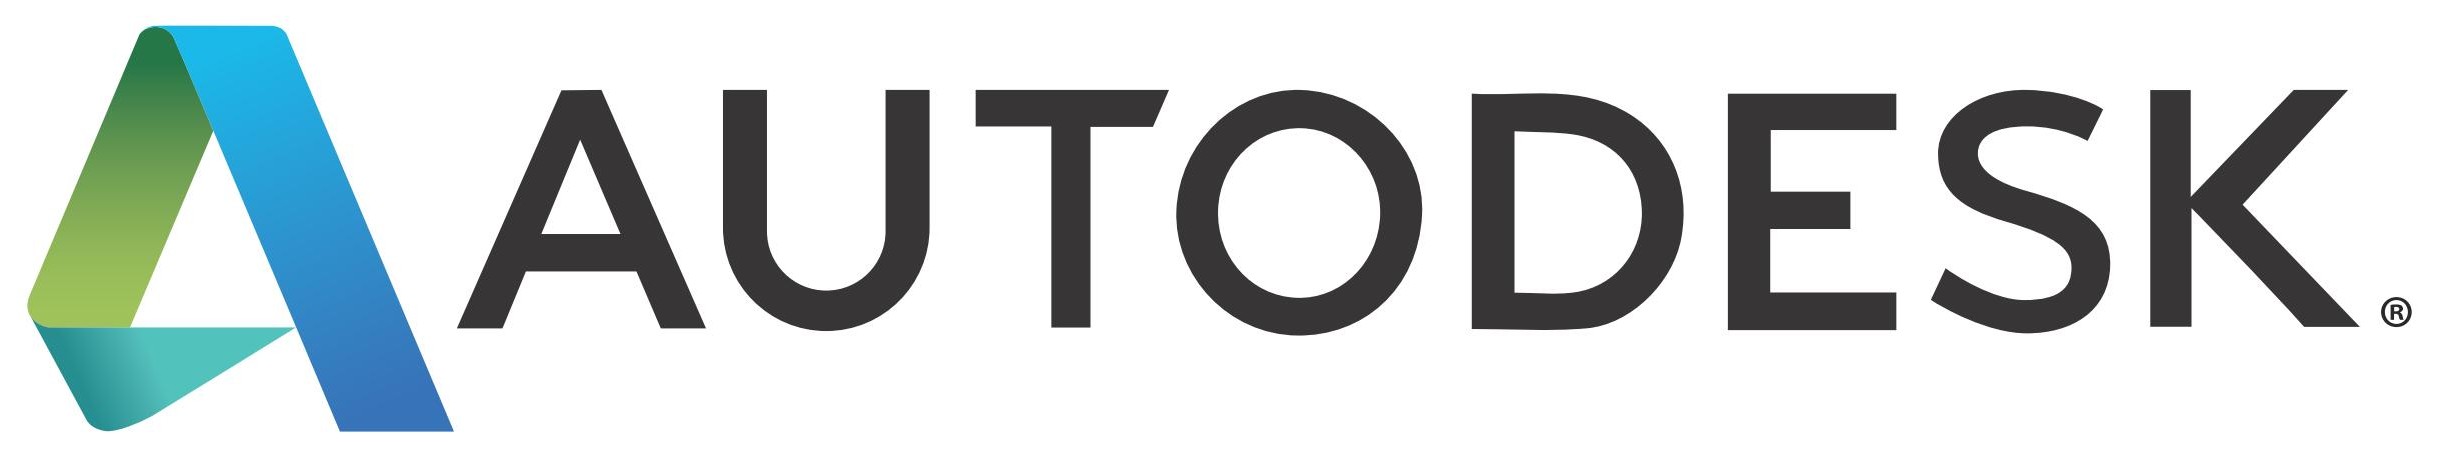 Autodesk-logo[1].jpg